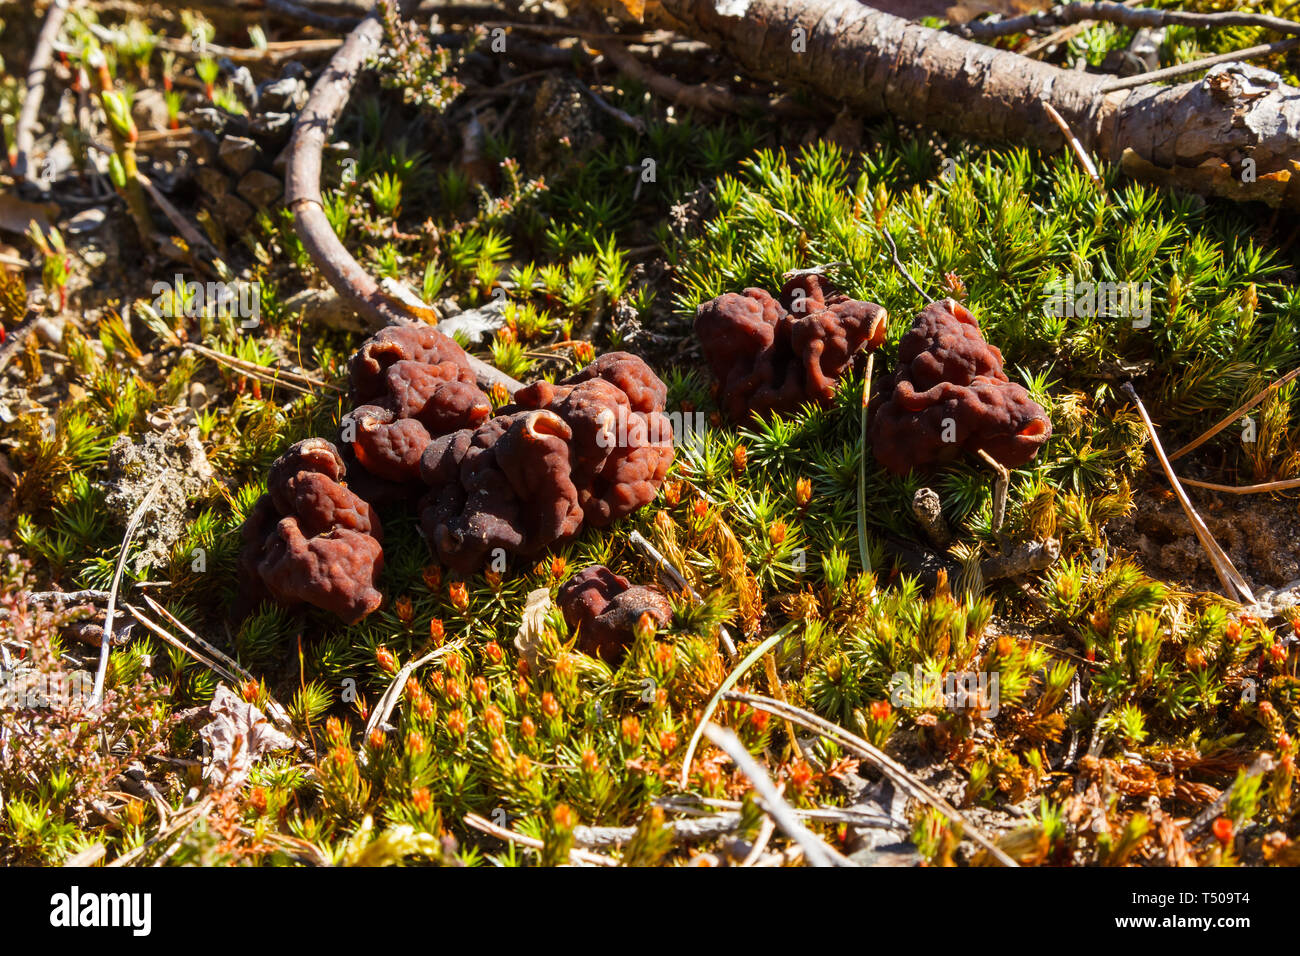 Mushrooms Gyromitra in forest in spring, wildlife scene Stock Photo